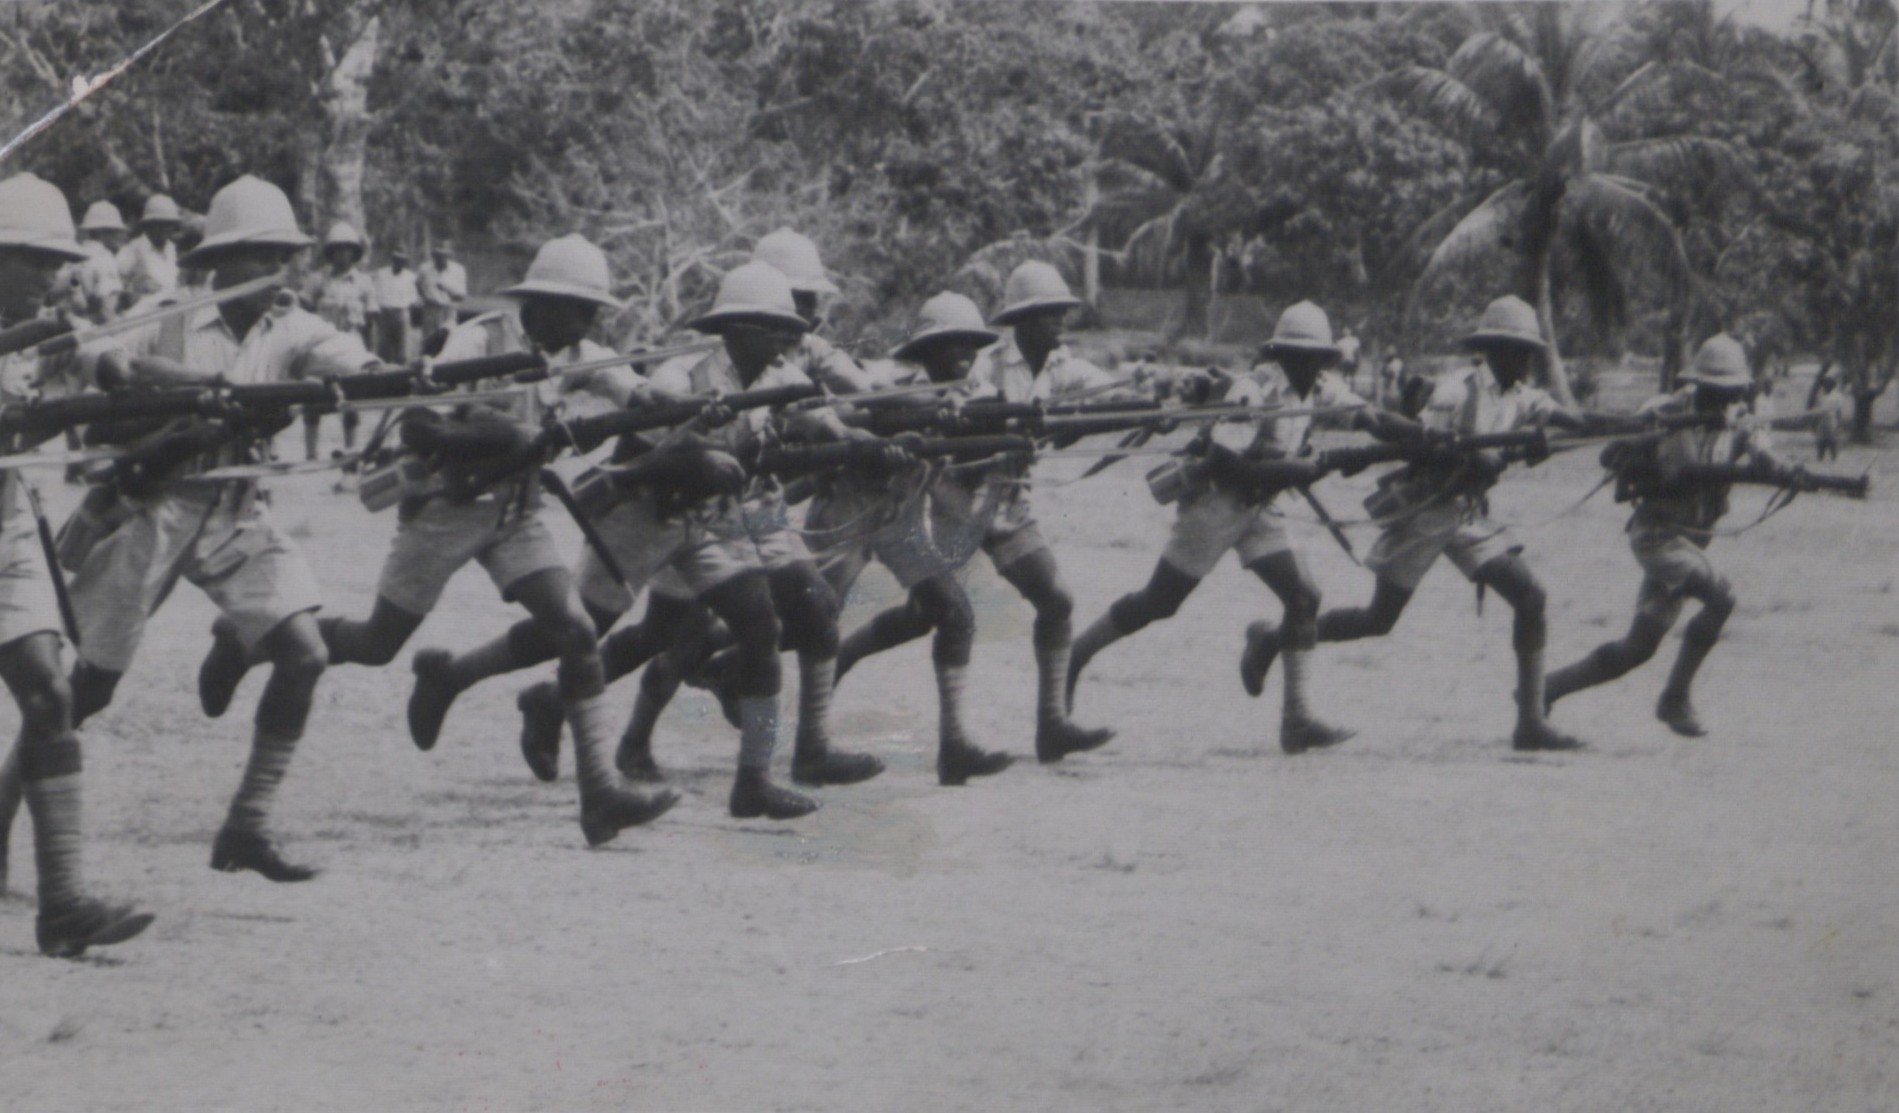 Soldiers in Trinidad and Tobago